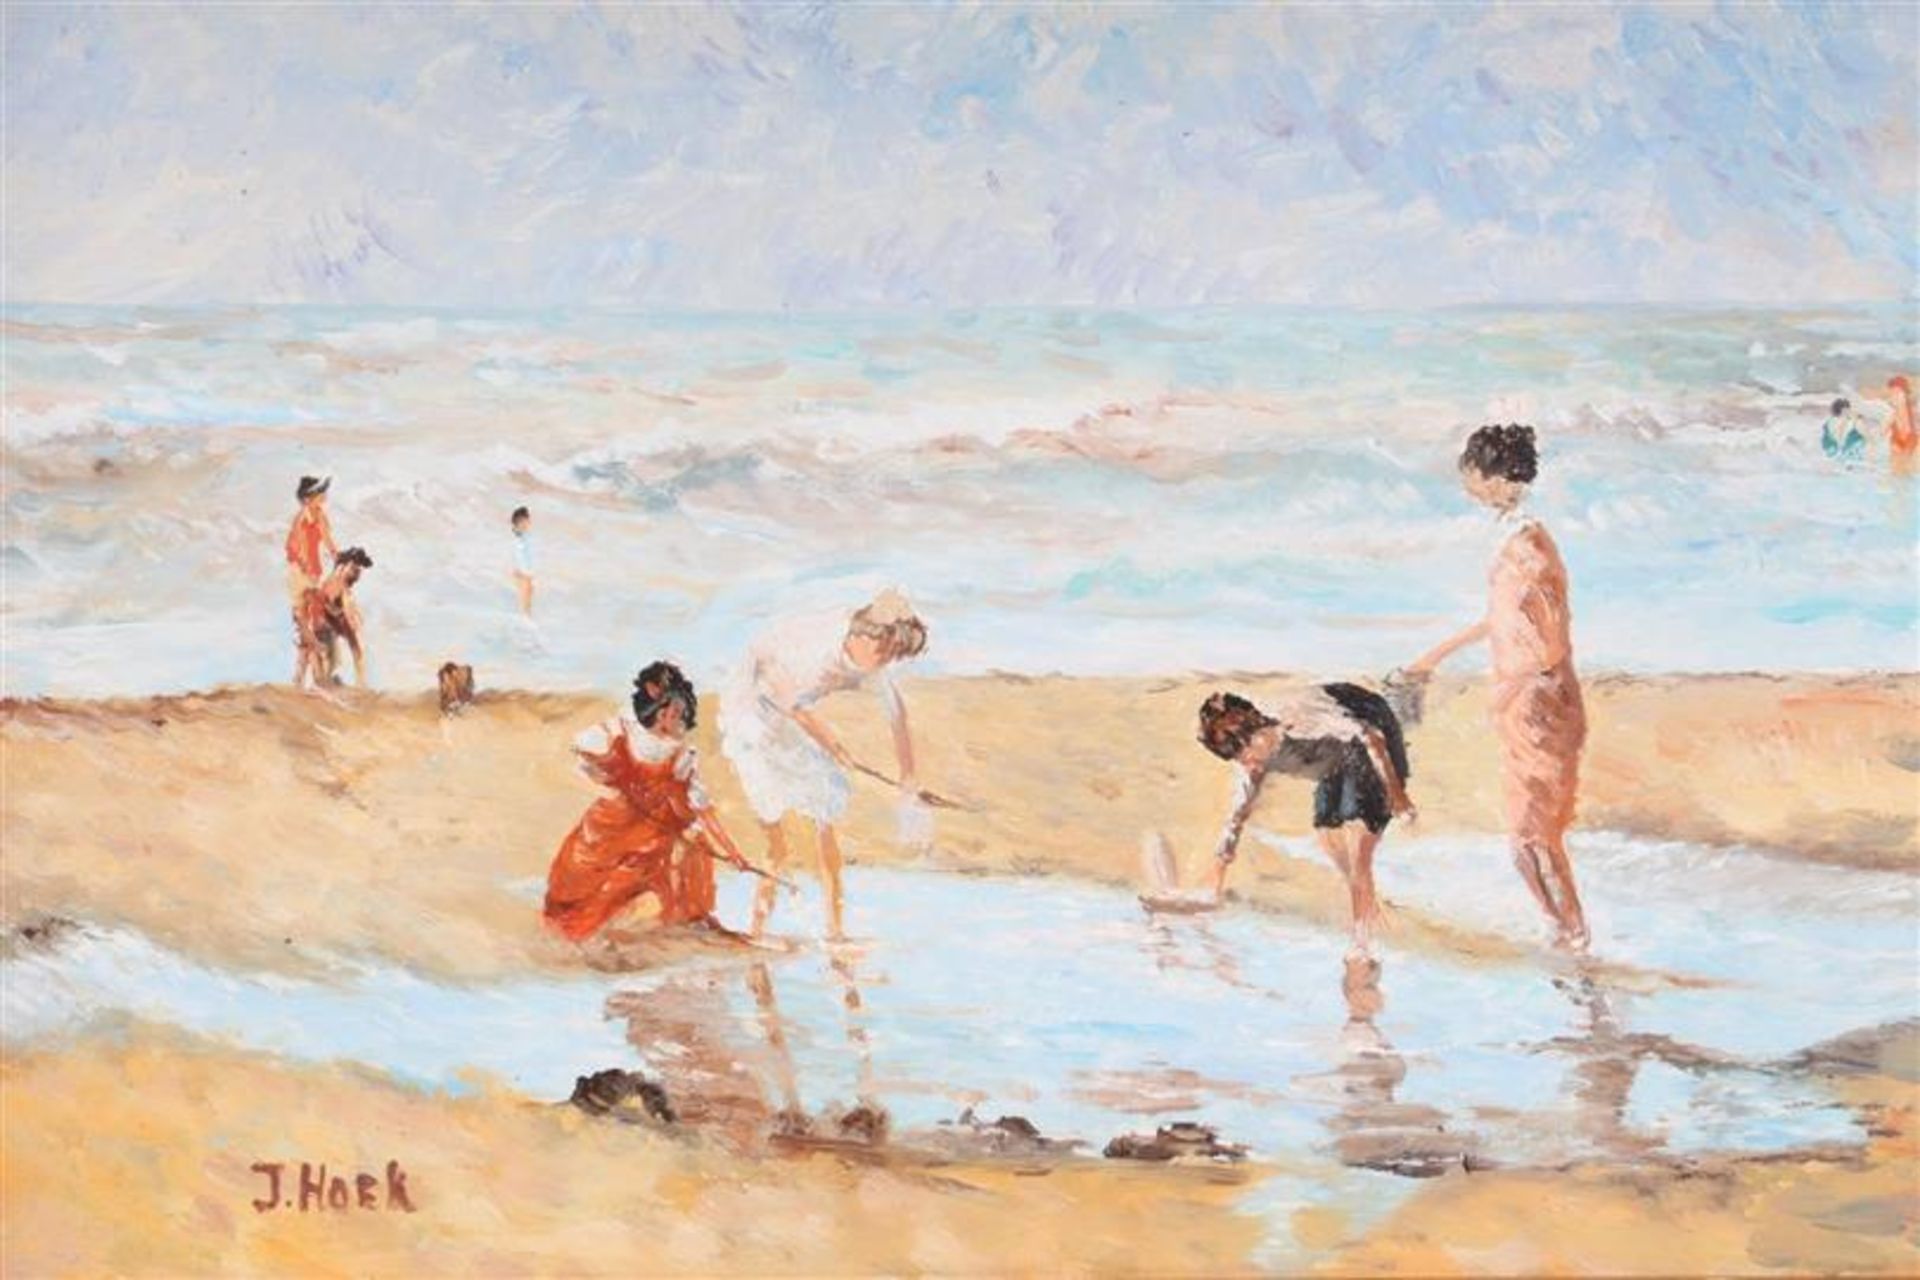 Schilderij op paneel, 'Strandgezicht', gesigneerd J. Hoek. HxB: 19 x 28 cm. - Bild 2 aus 4